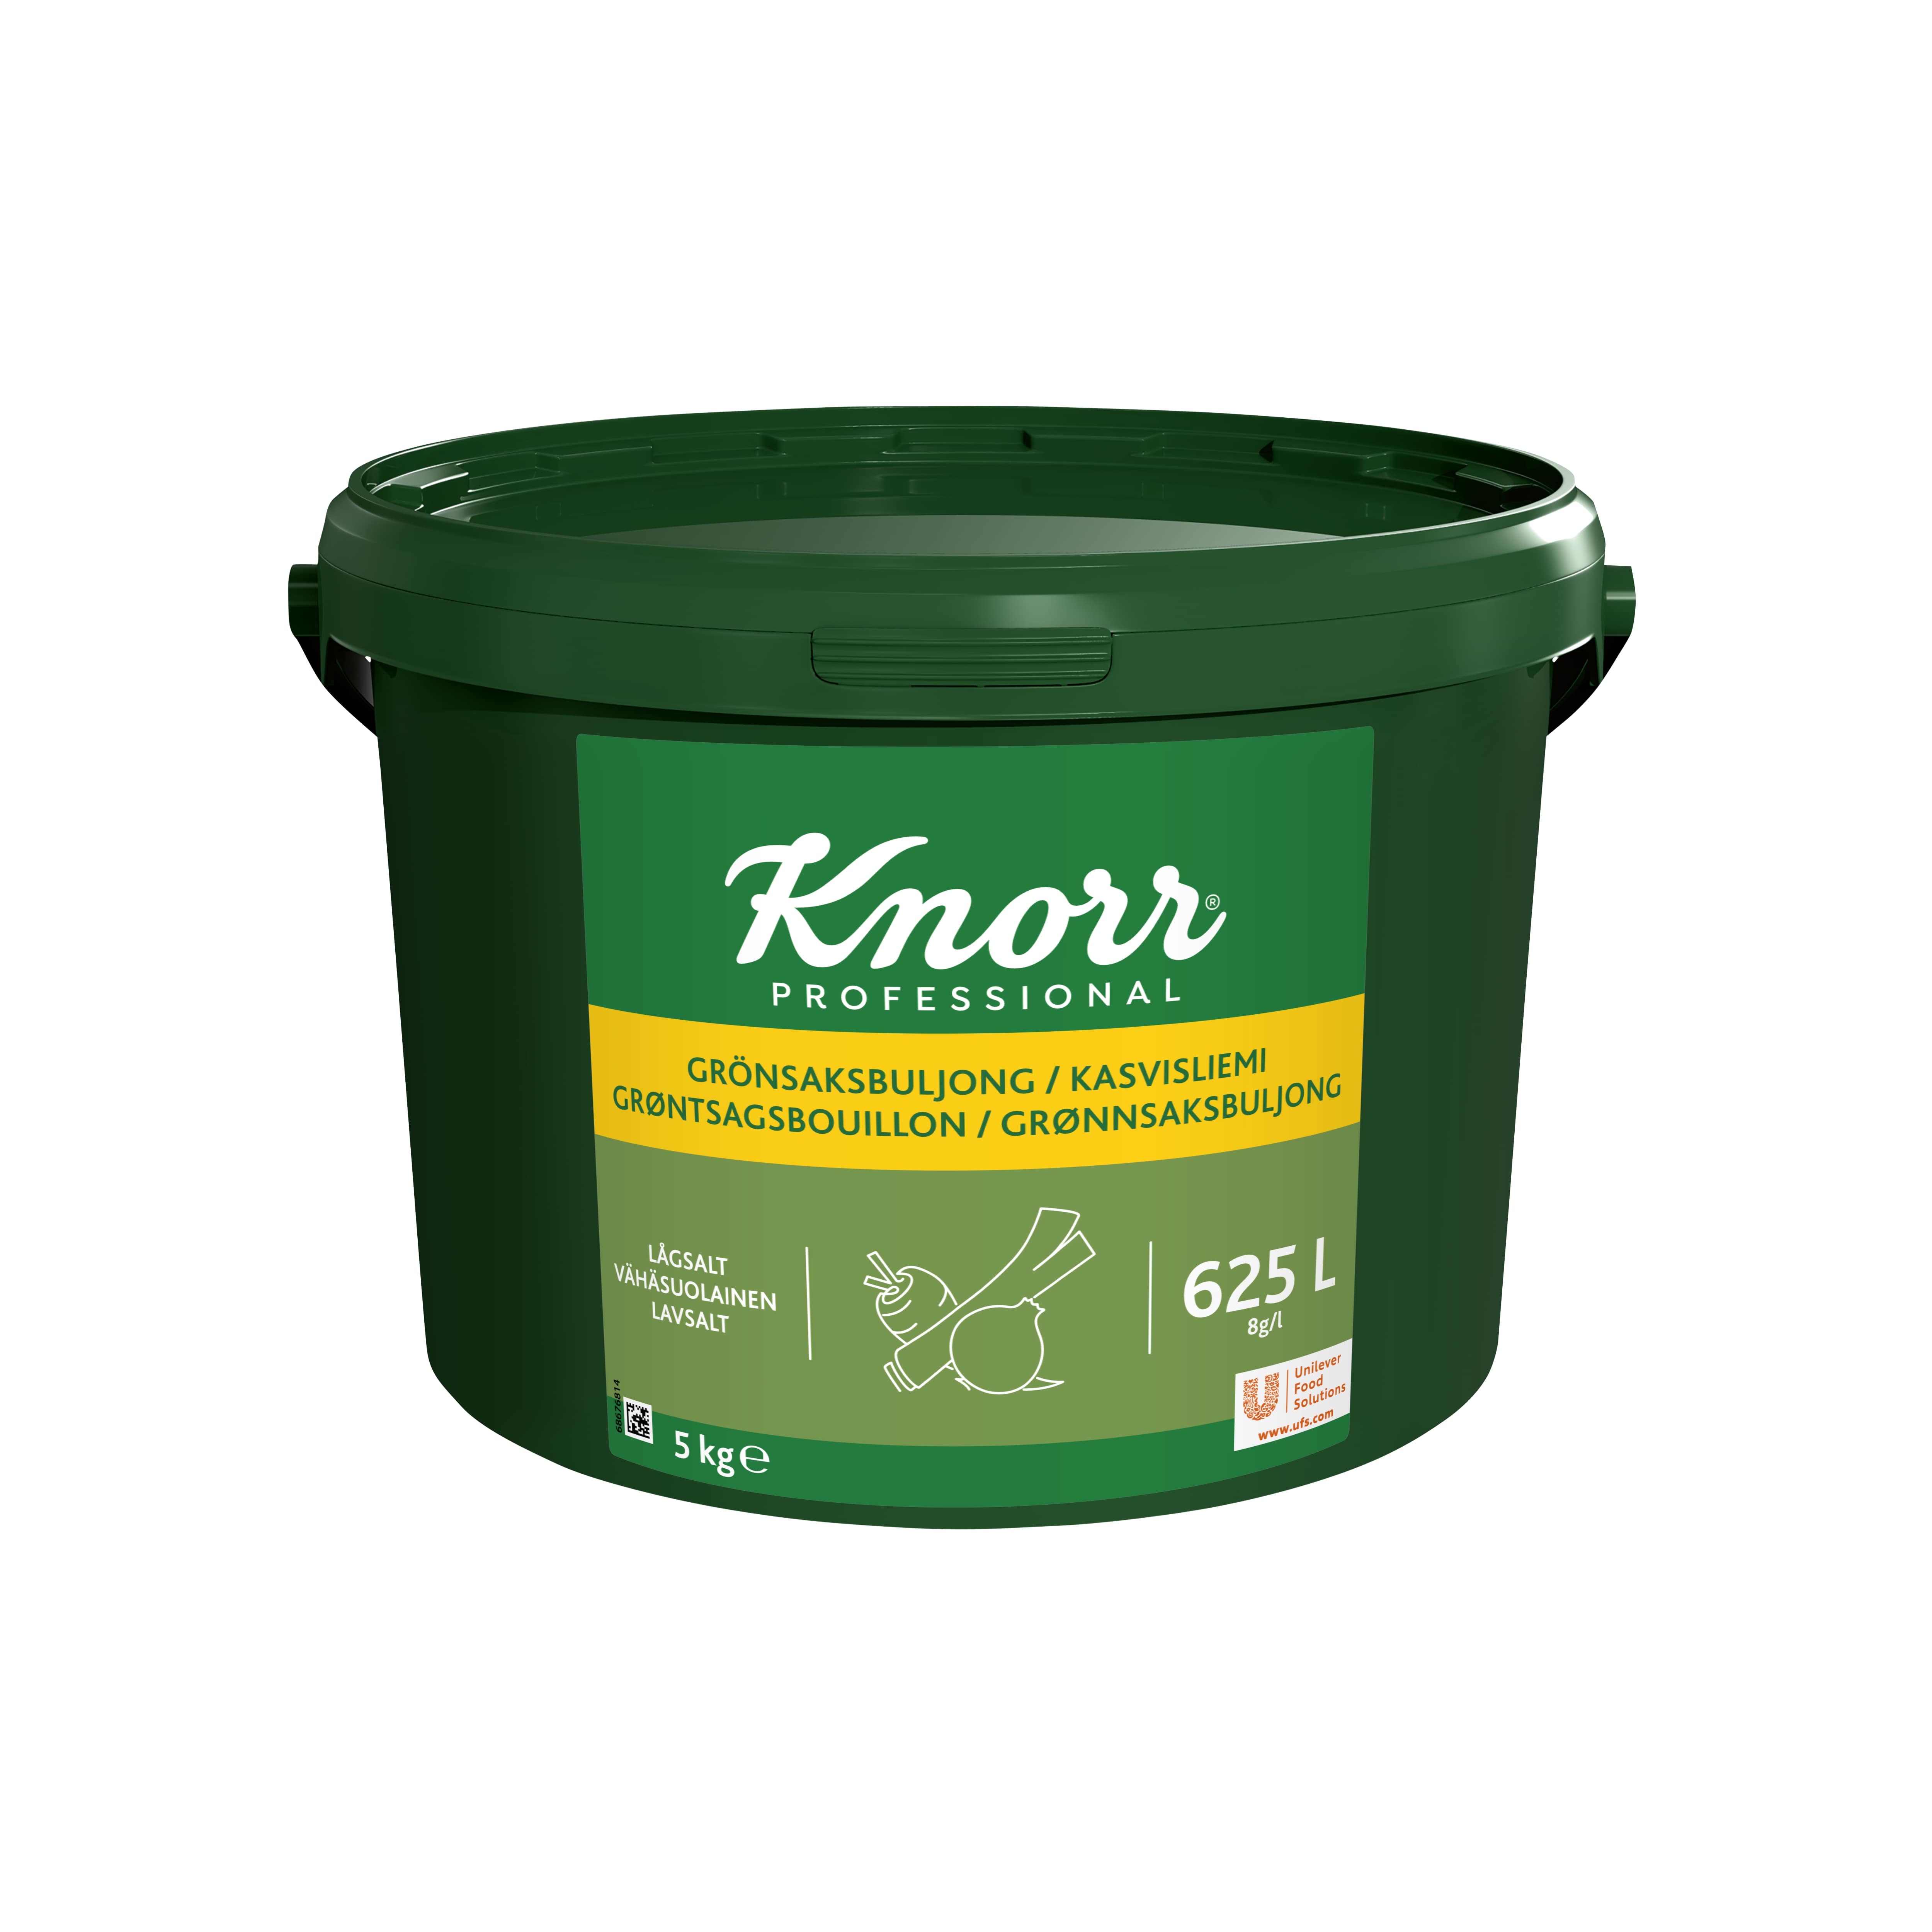 Knorr Kasvisliemi vähäsuolainen 5 kg / 625 L